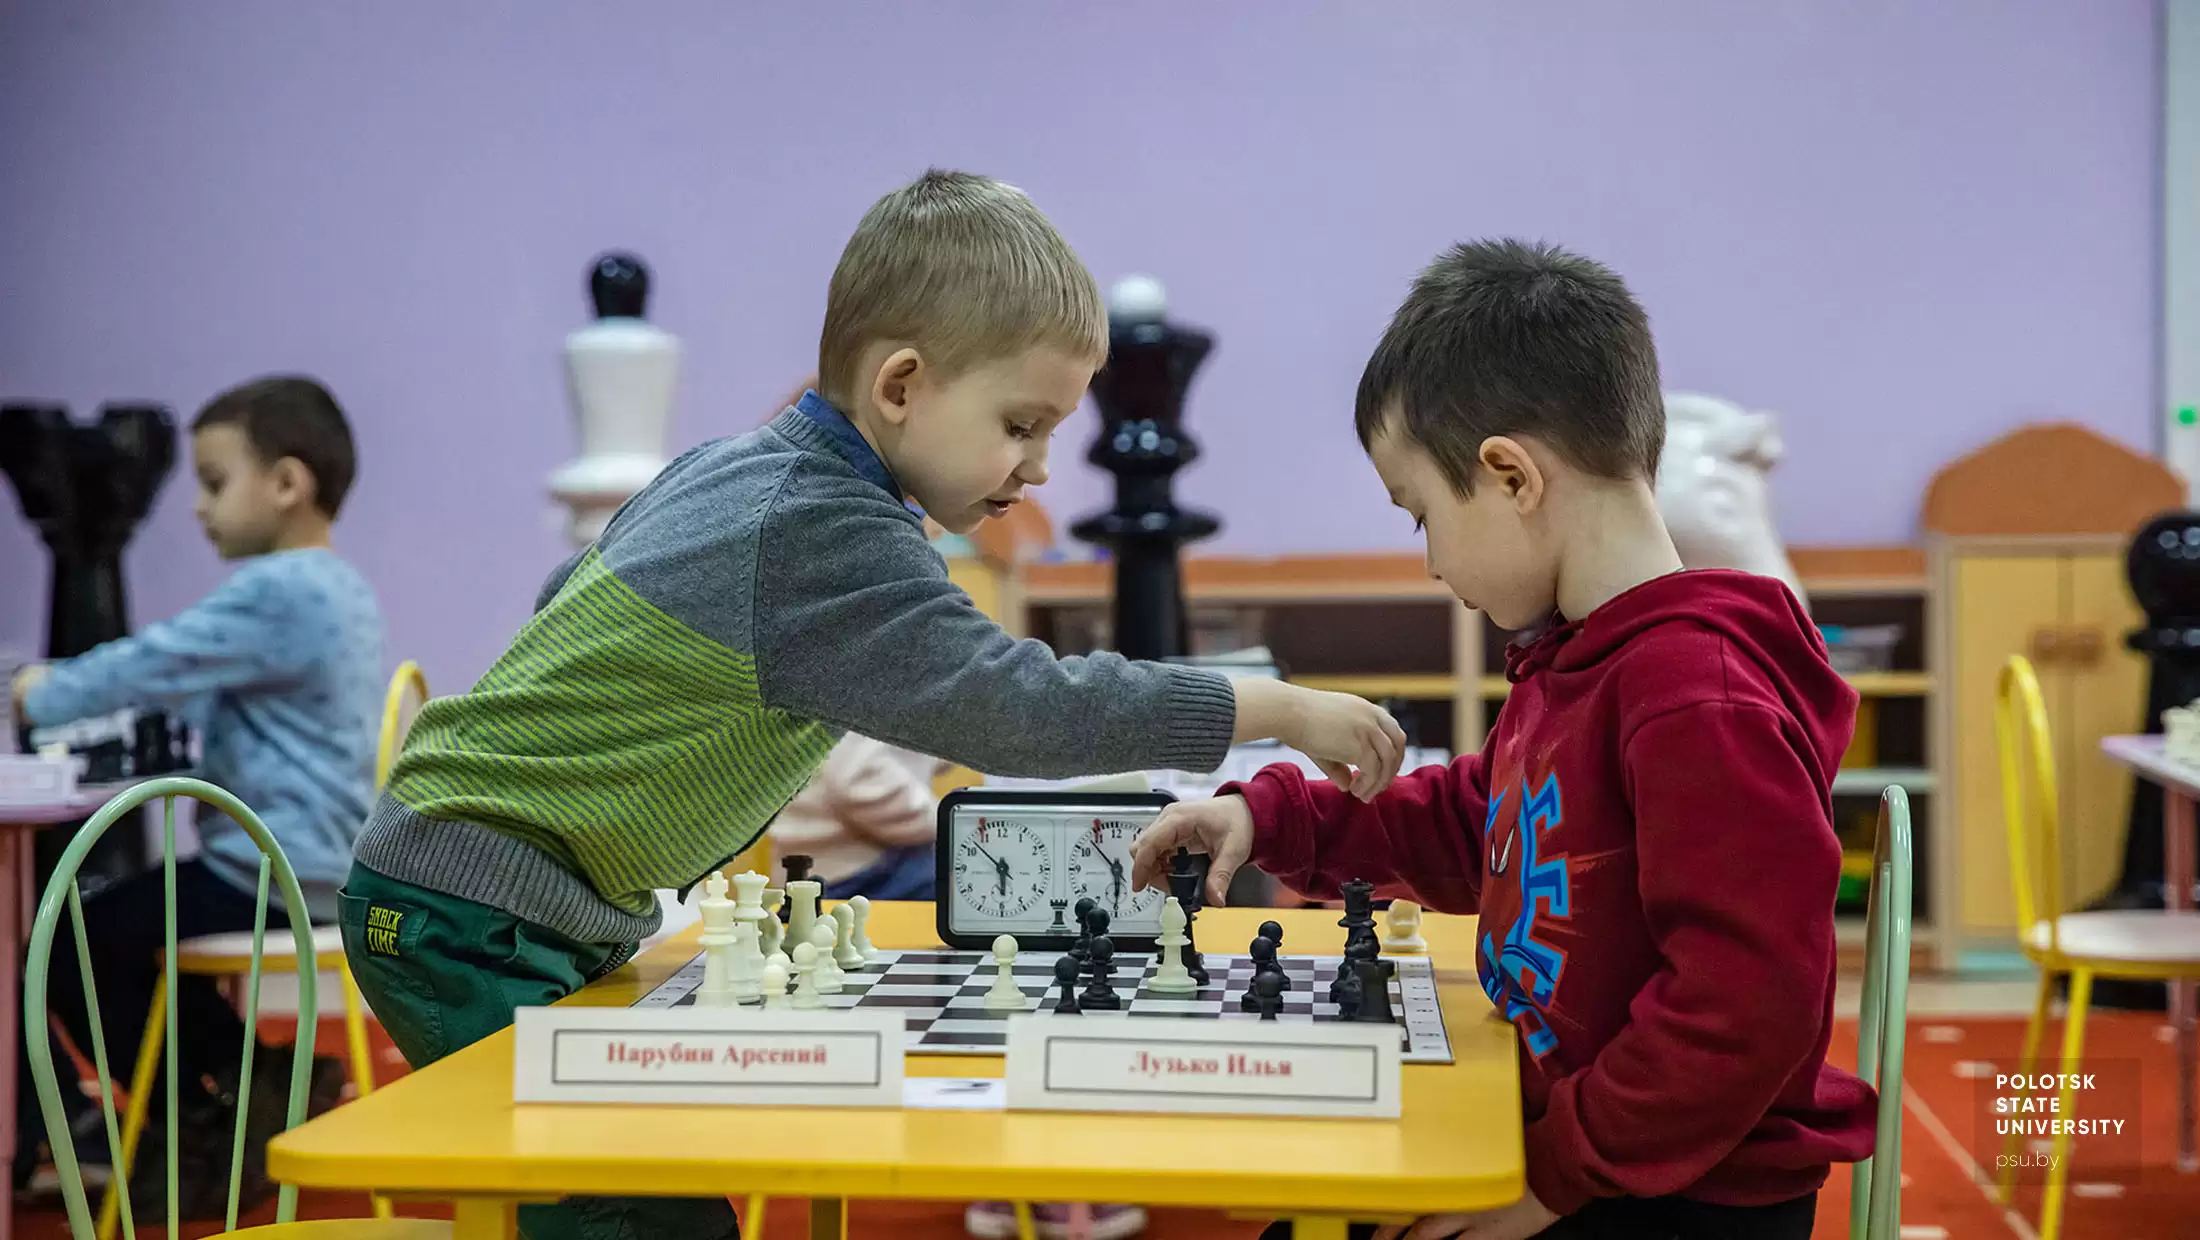 Шахматная партия между Нарубиным Арсением и Лузько Ильёй